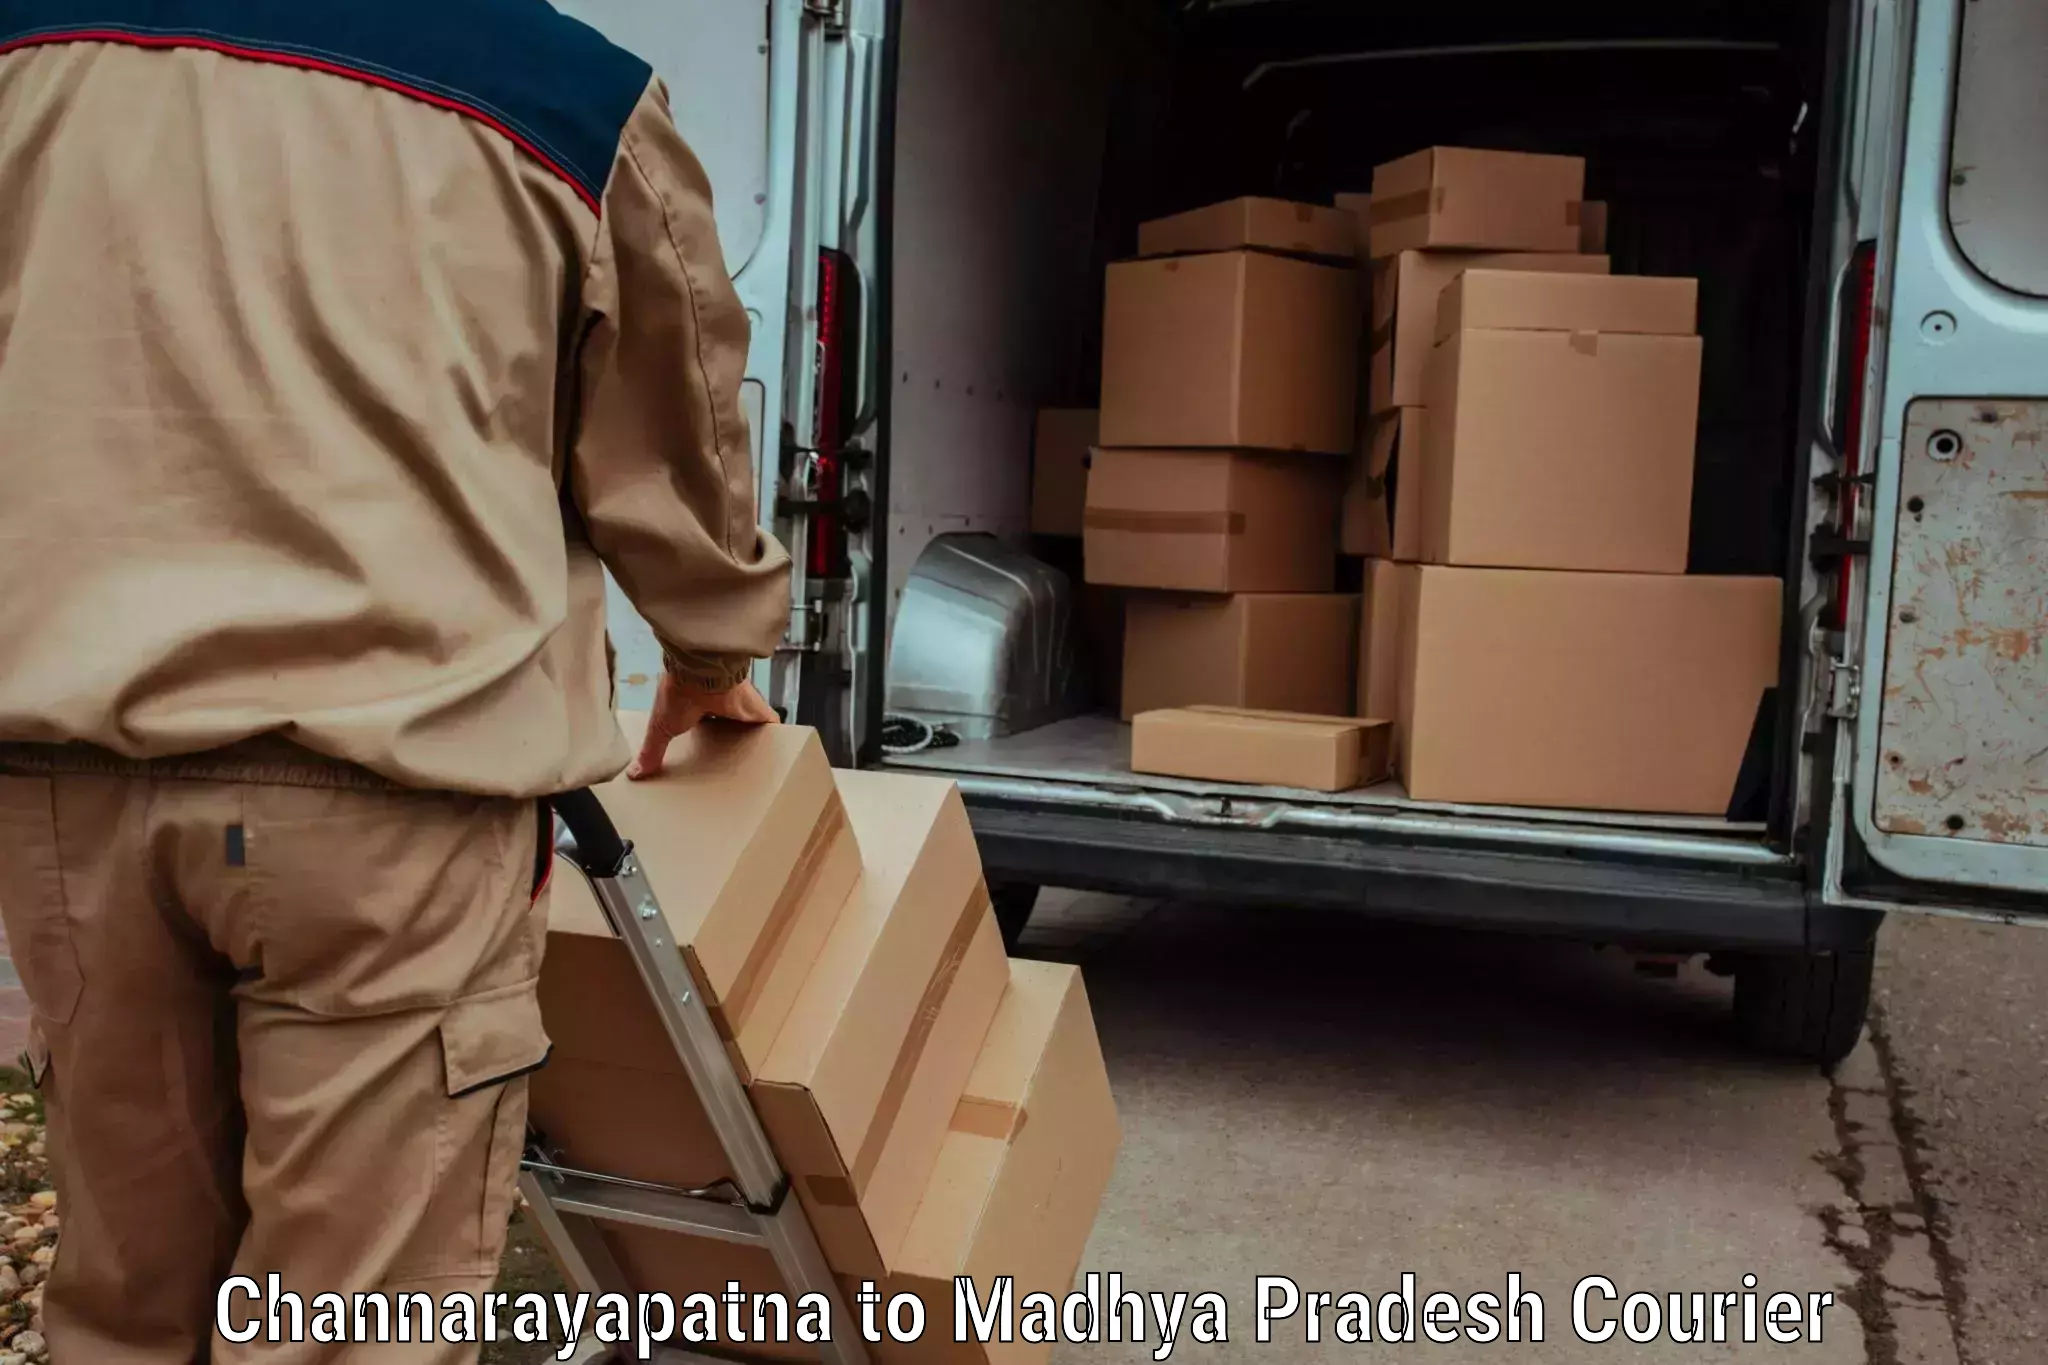 Door-to-door freight service Channarayapatna to Satna